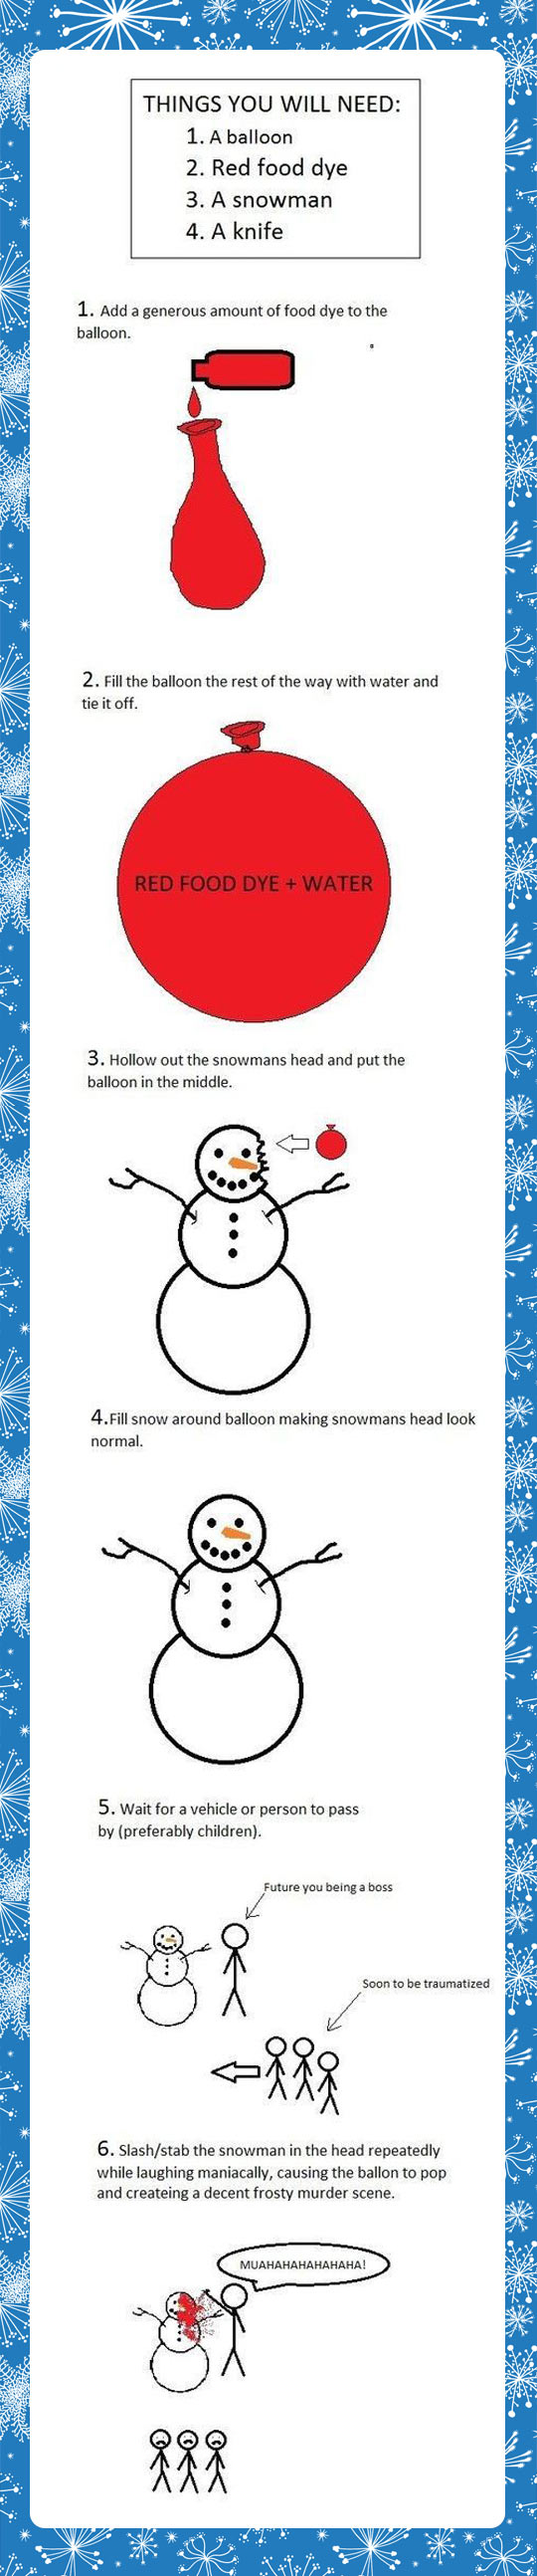 funny-picture-snowman-head-balloon-joke-kids